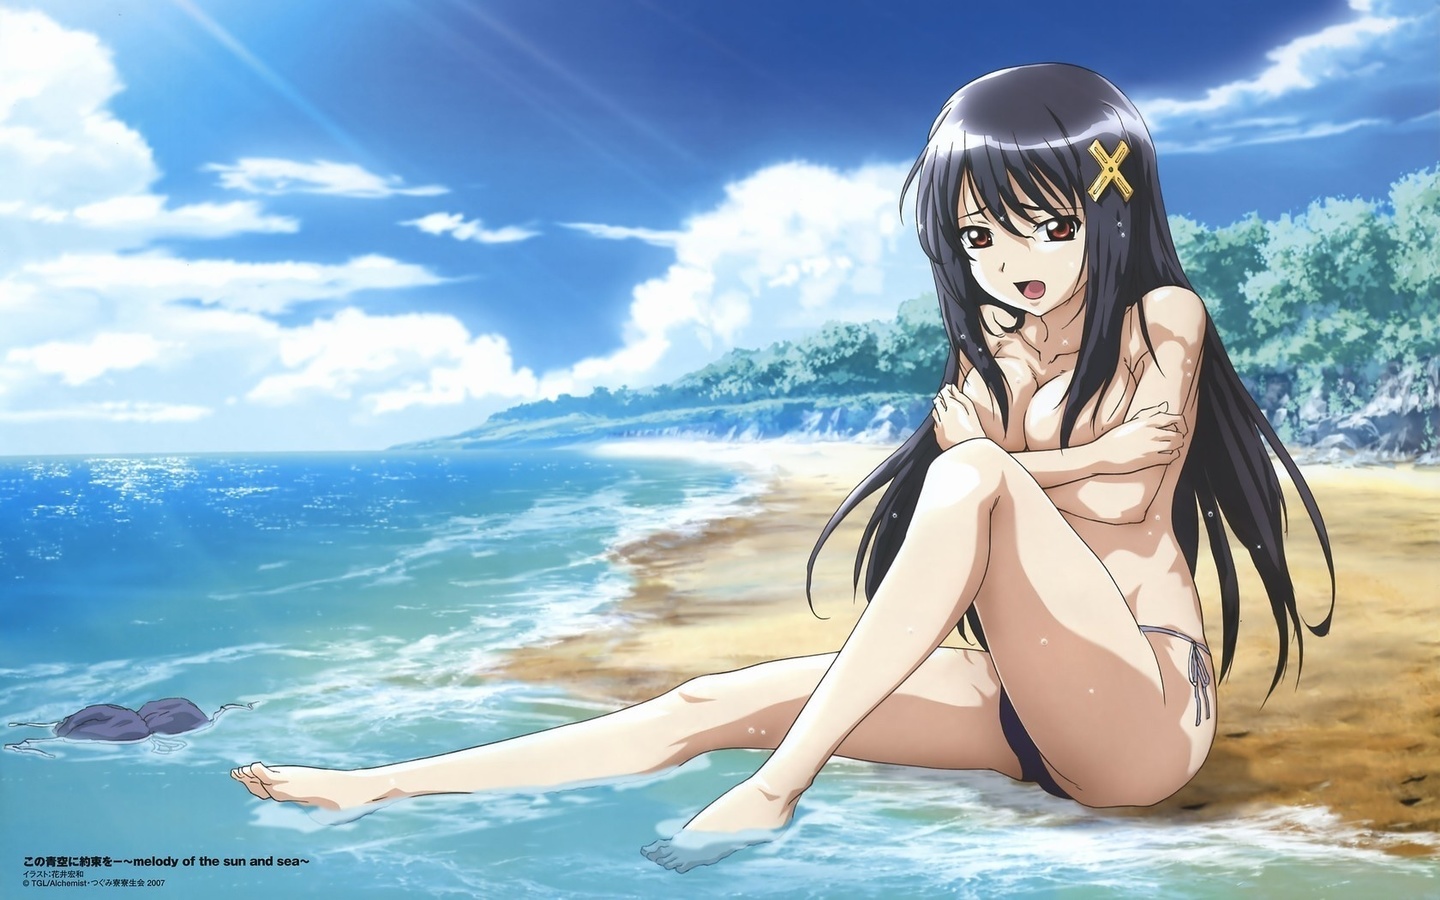 Картинки пляж, девушка, голая, аниме - обои 1440x900, картинка №6532